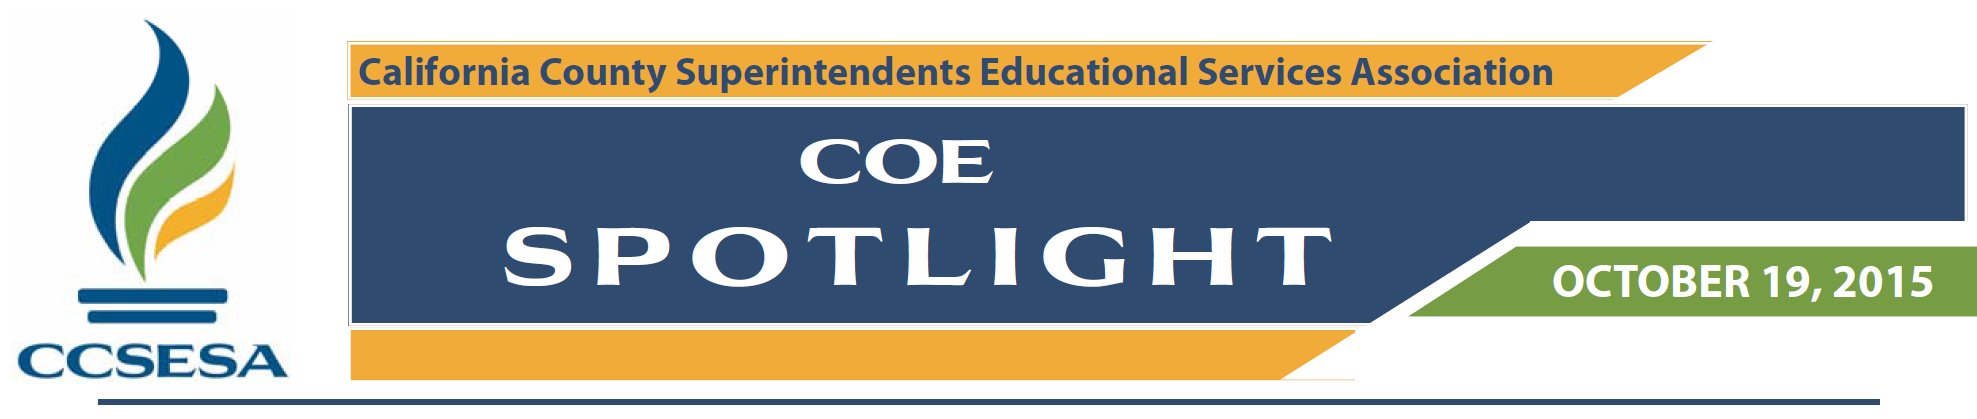 COE Spotlight 10.19.2015